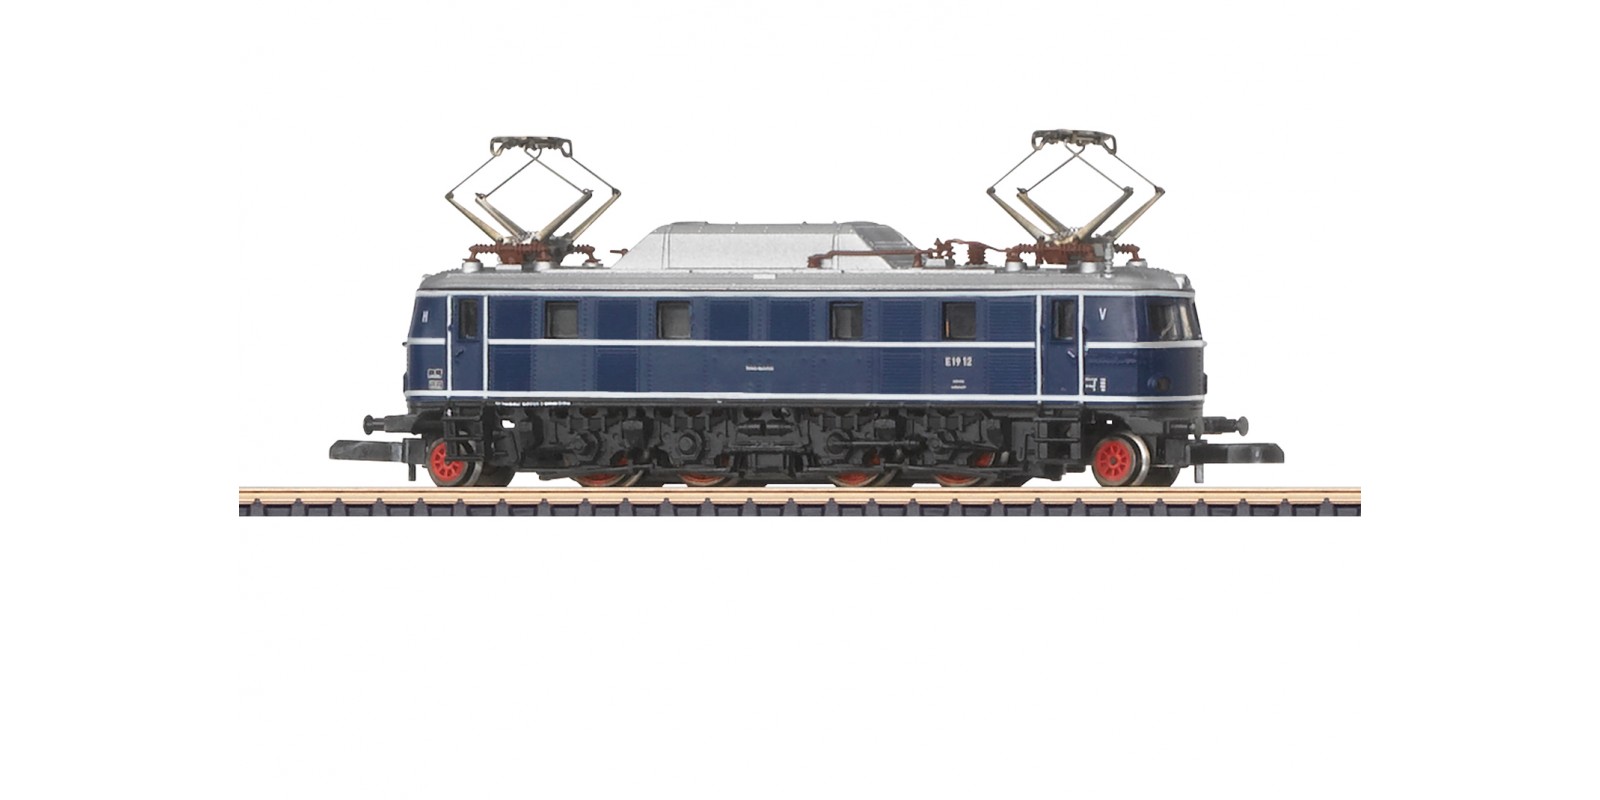 88085 Class E 19 Electric Locomotive